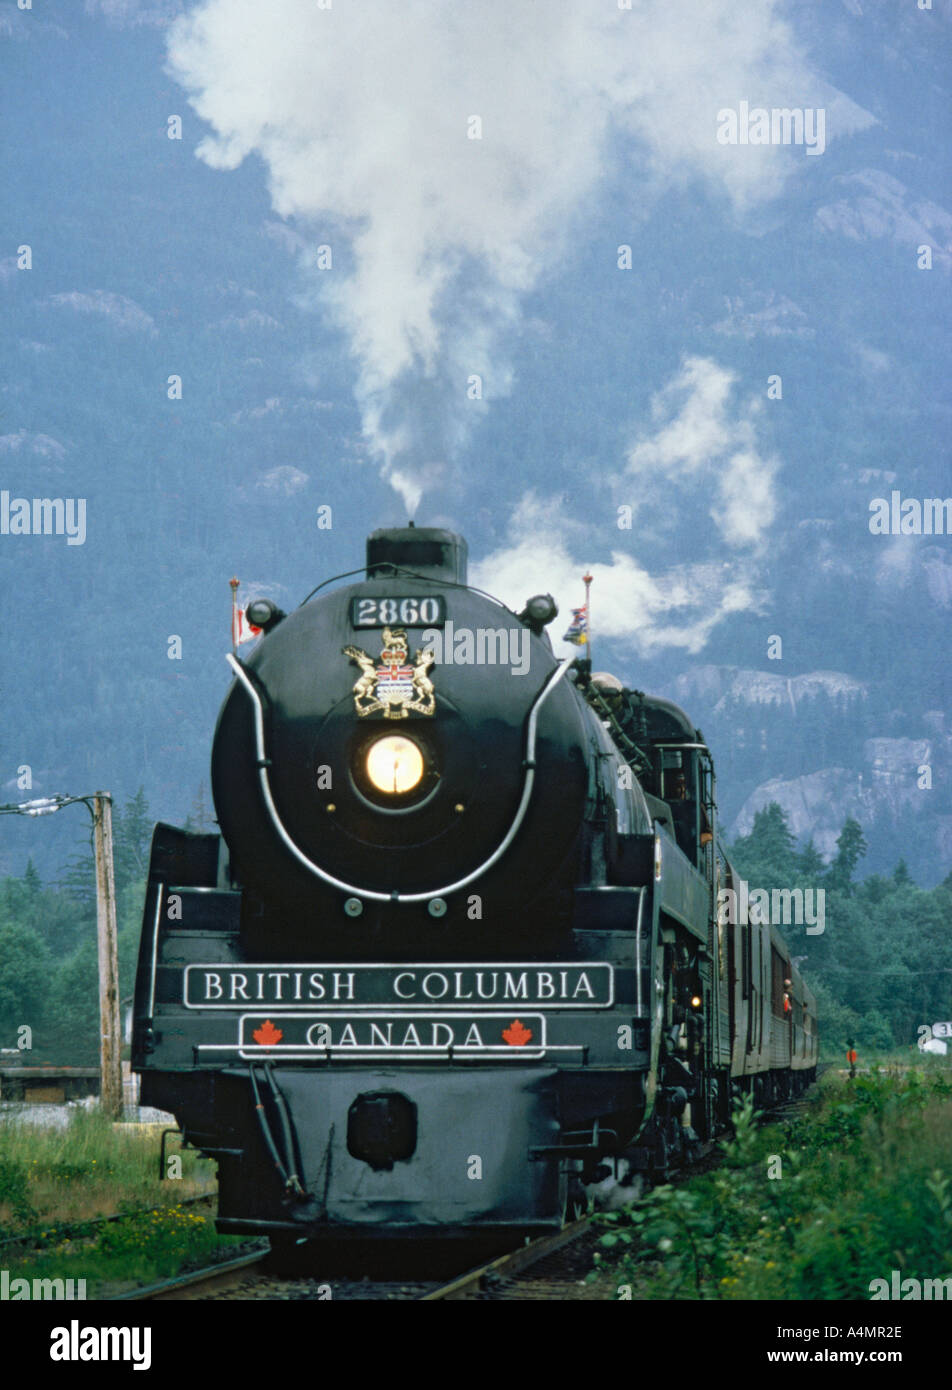 Face spectaculaire vue de l'angle faible noir restauré Train à vapeur Royal Hudson près de Vancouver Canada Banque D'Images